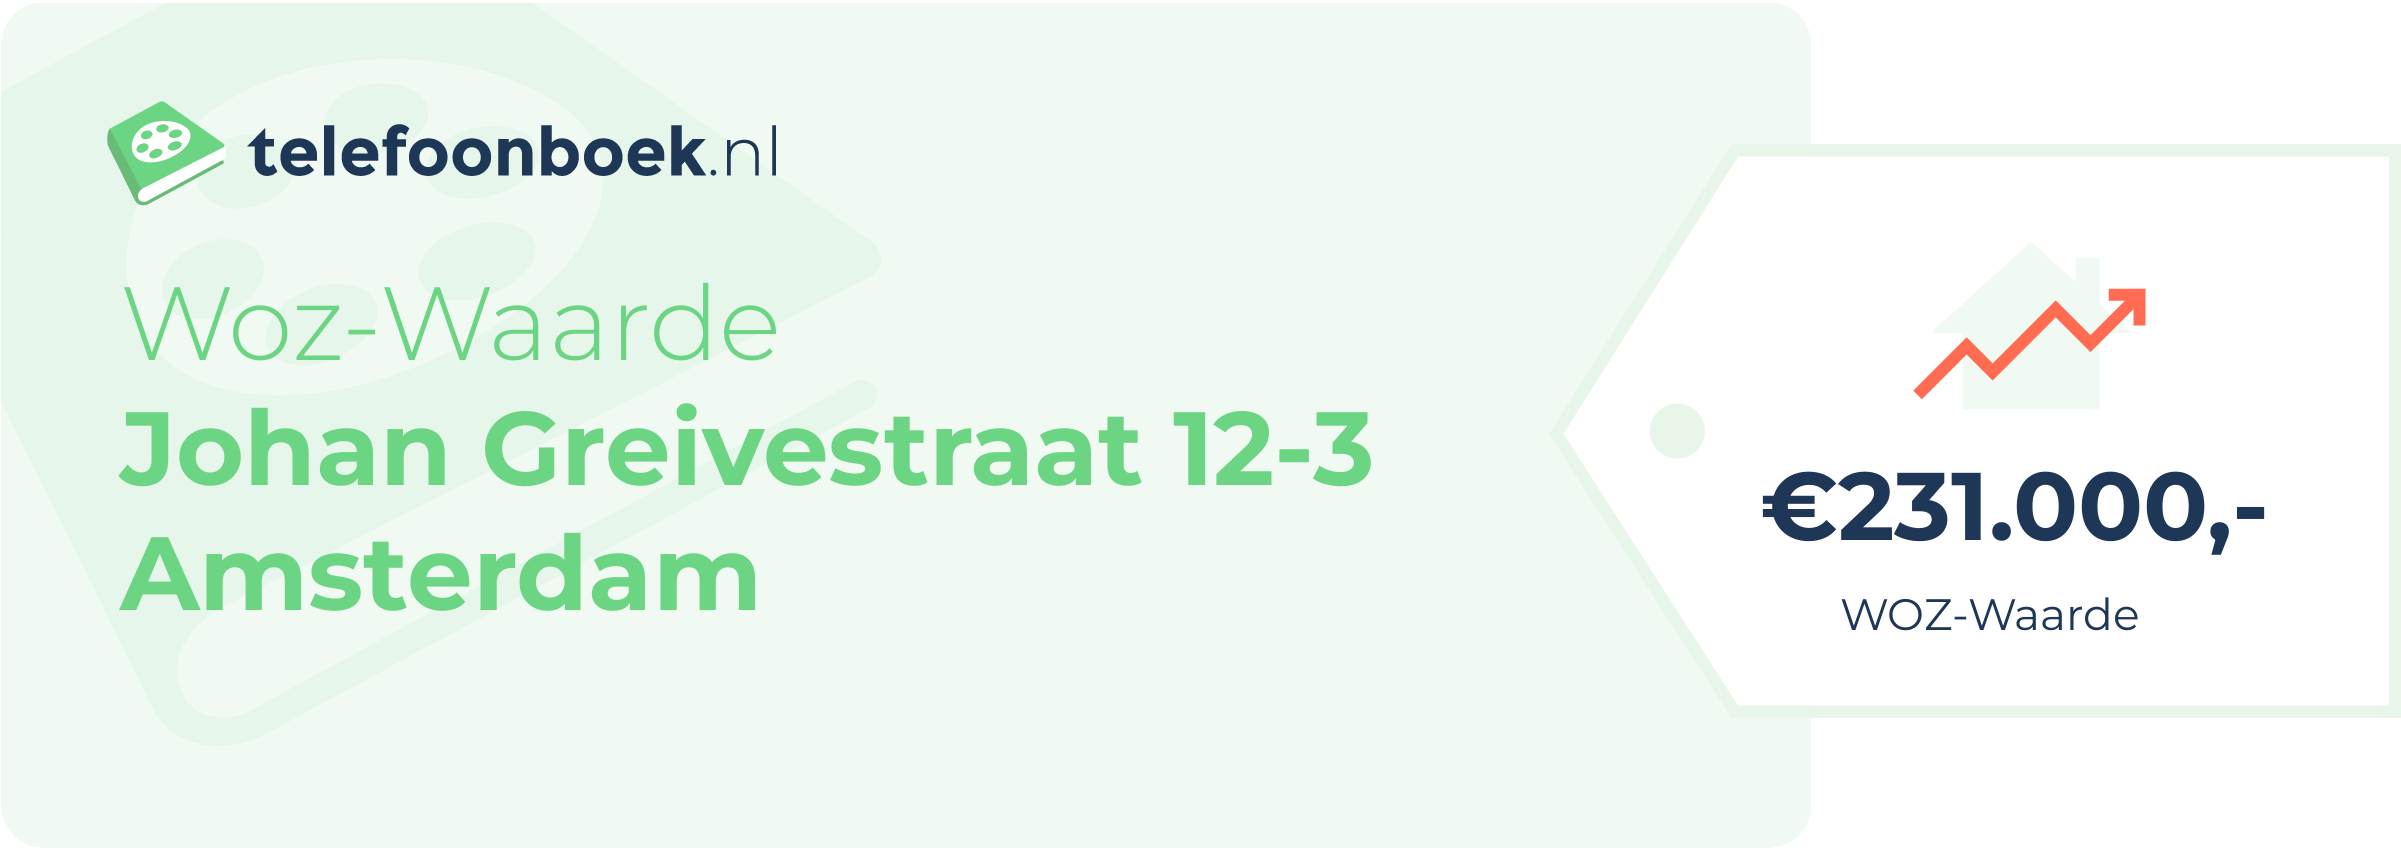 WOZ-waarde Johan Greivestraat 12-3 Amsterdam